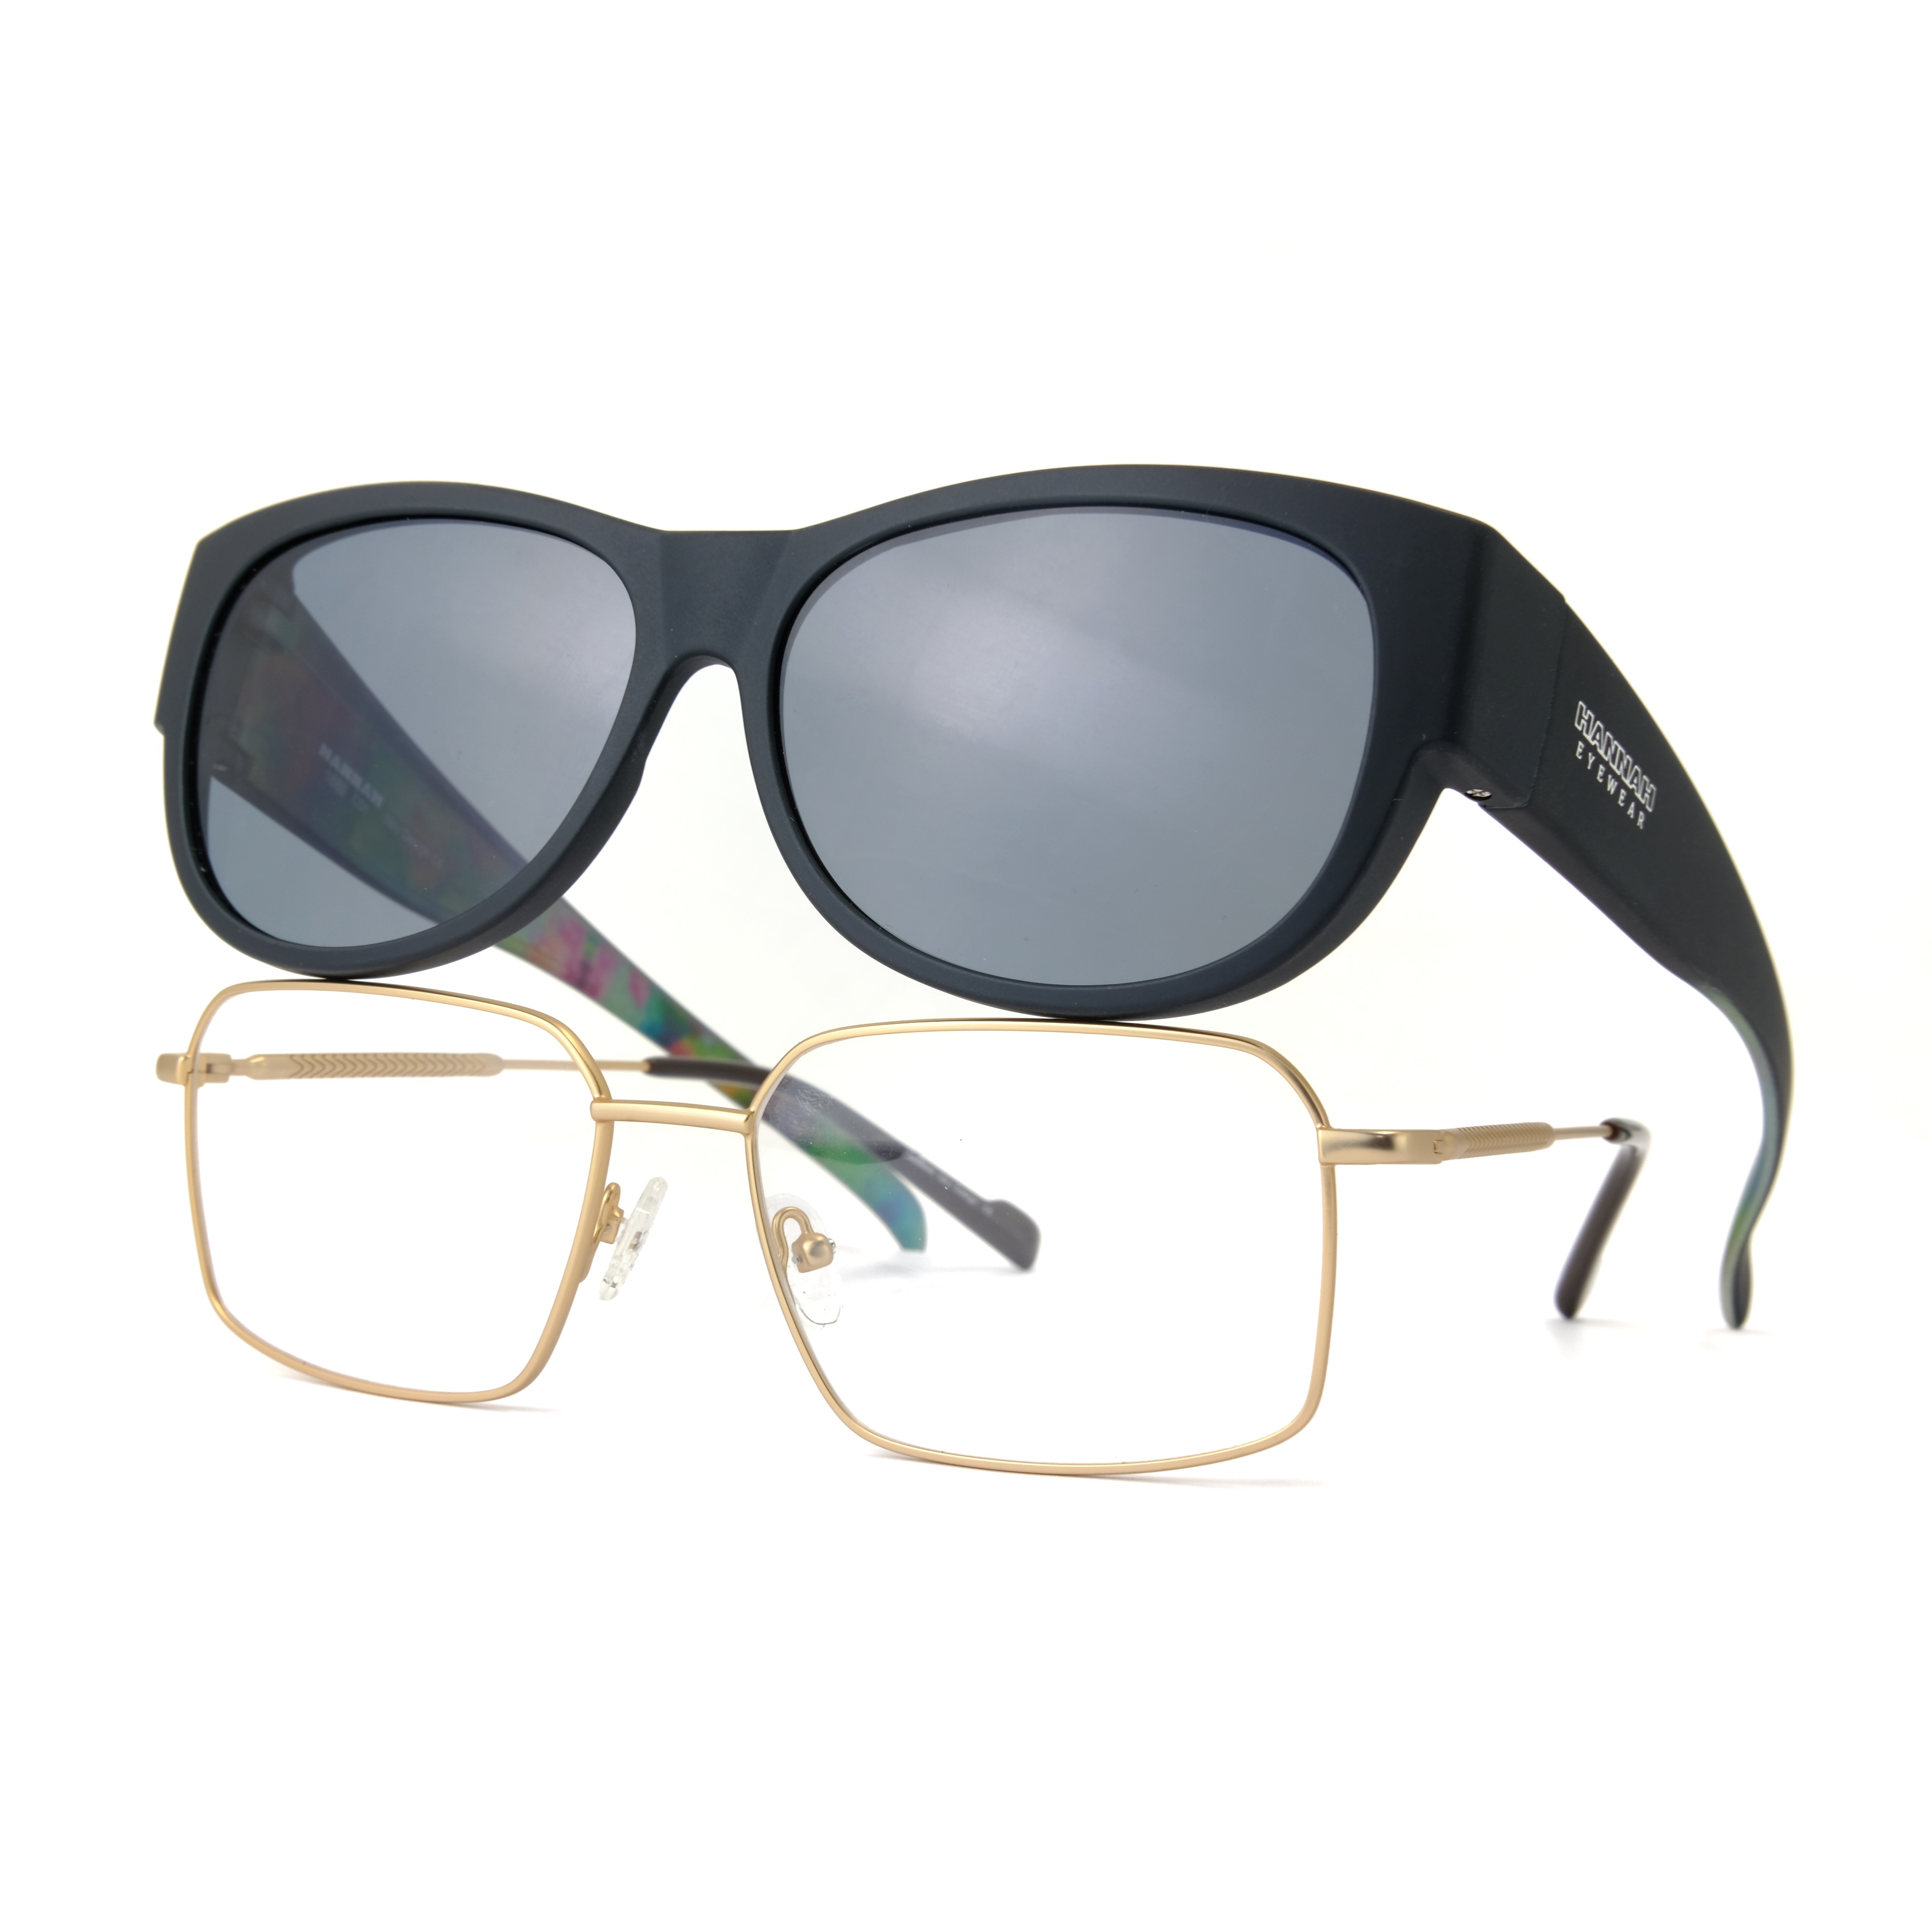 Gafas de sol de ajuste personalizado río negro espejo blu ray polarizadas Fitover mujeres gafas de sol 2021 hombres tonos de gran tamaño